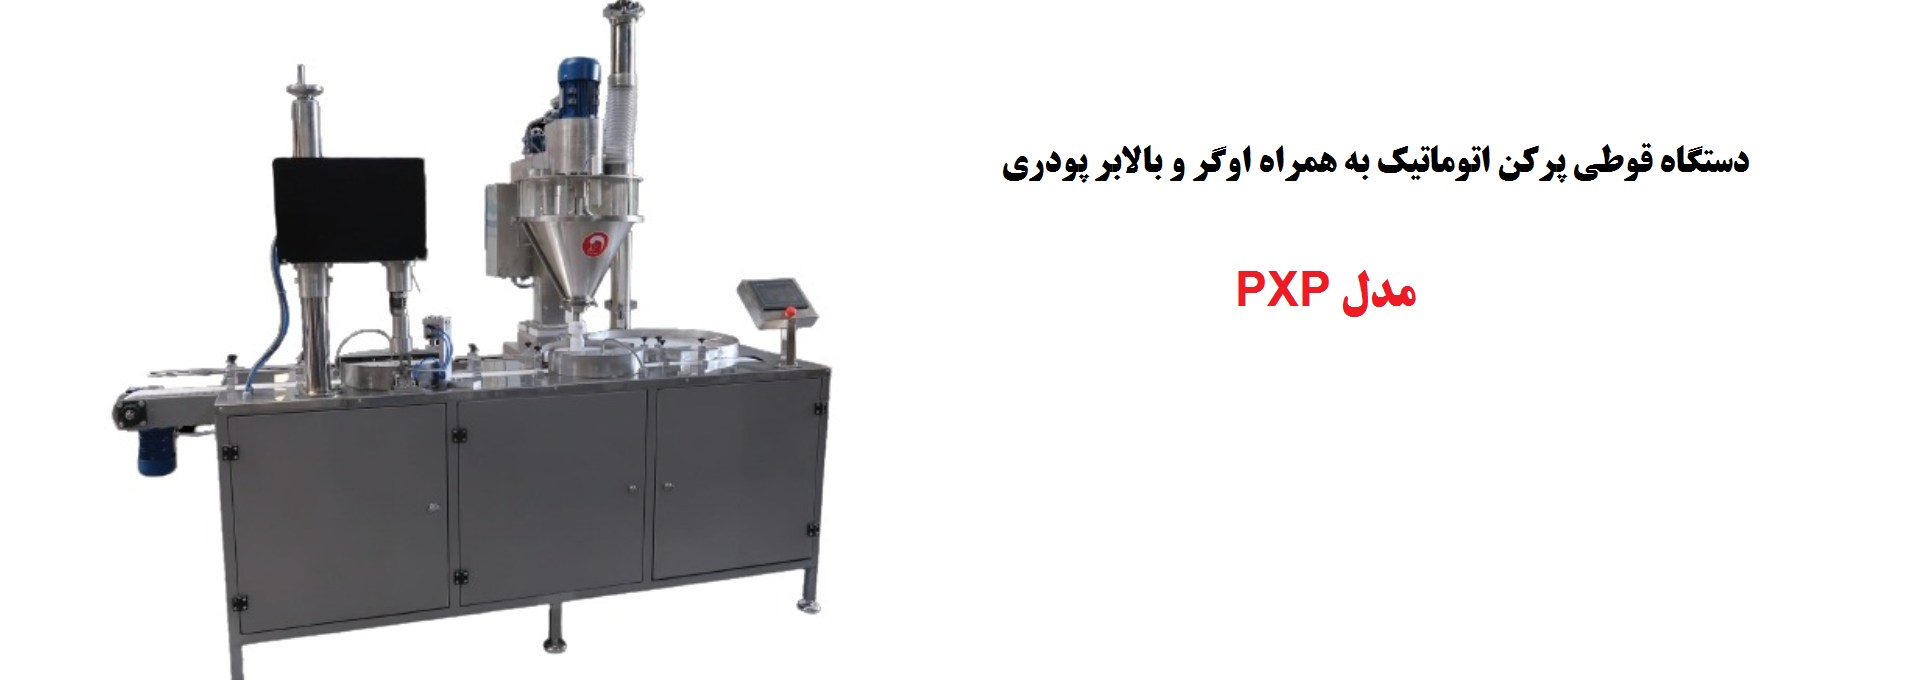 مدل PXP